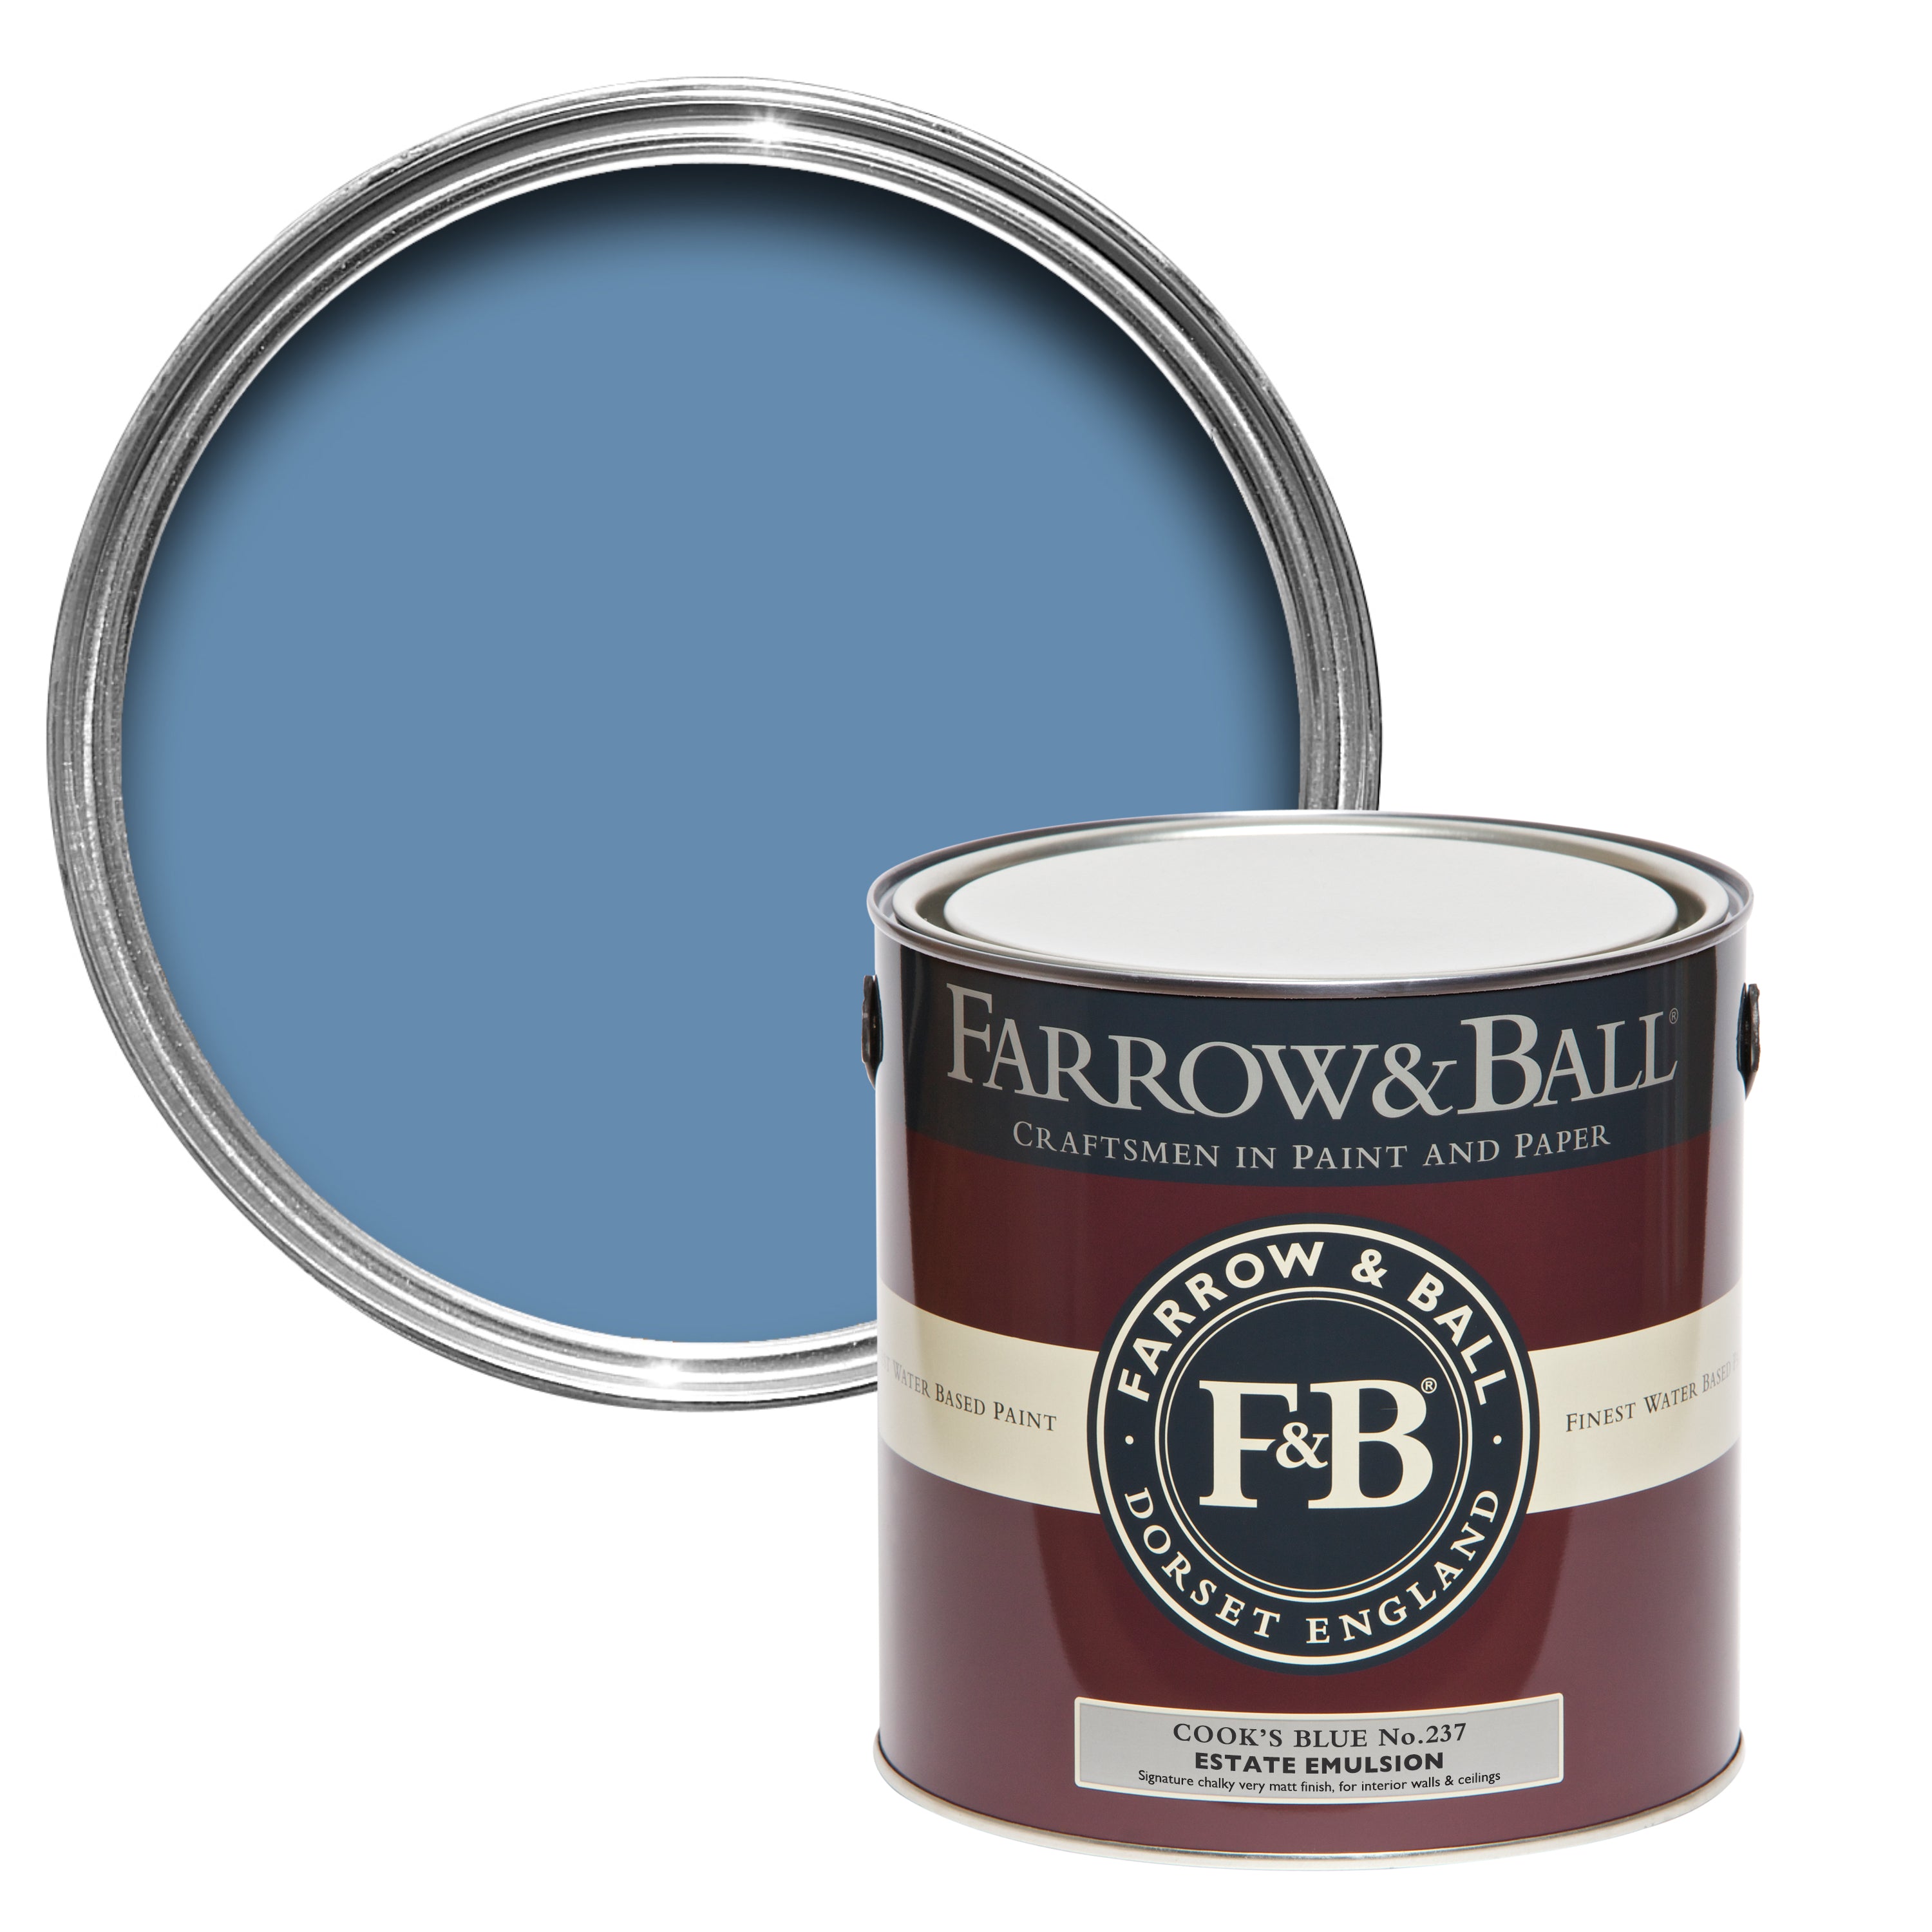 Cook's Blue No 237 | Farrow & Ball